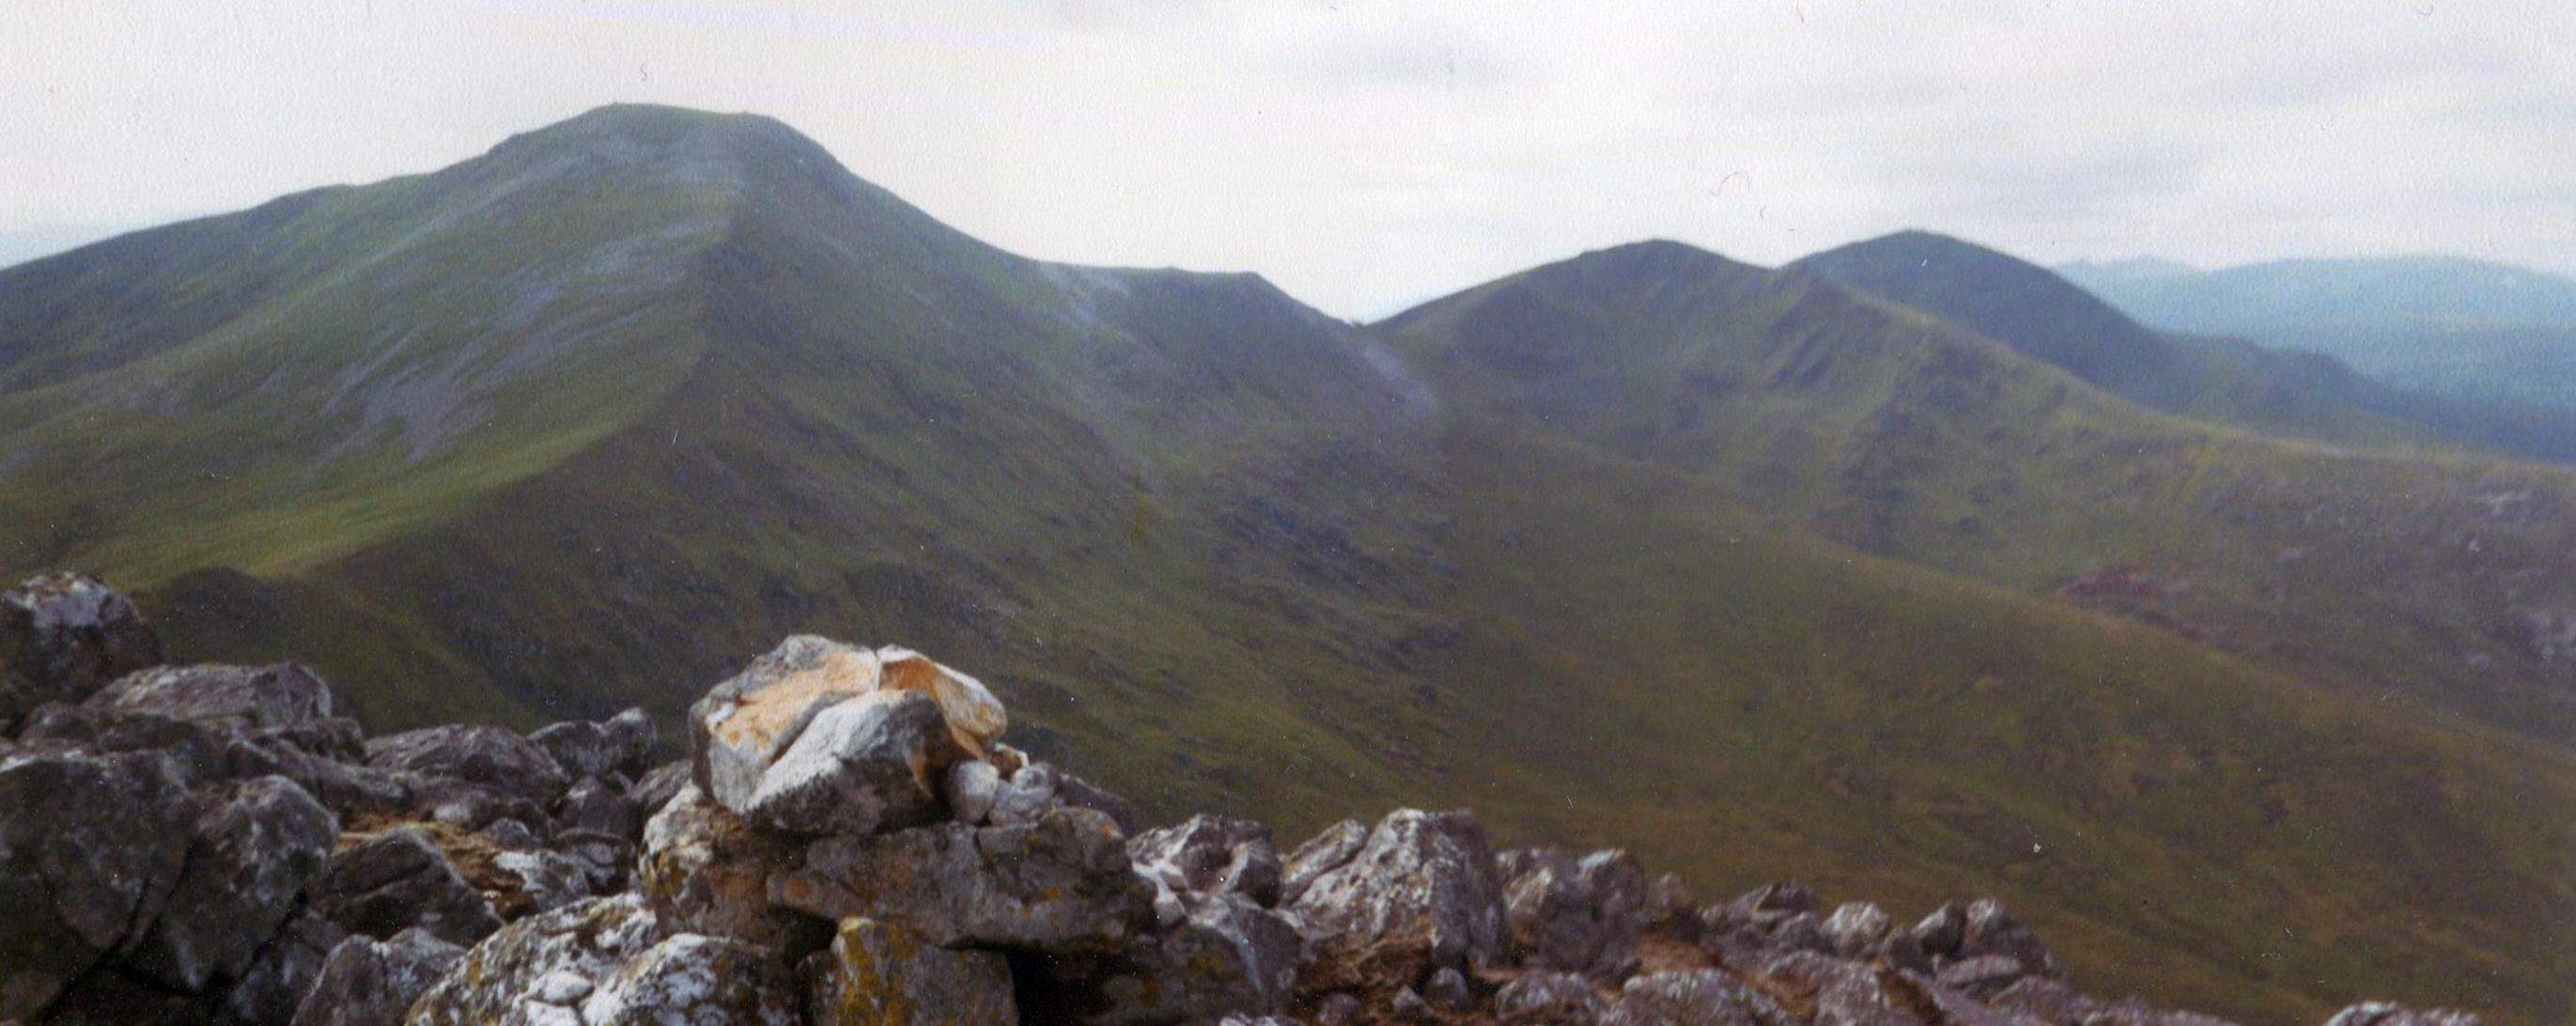 Sgurr a'Choire Ghlas, Creag Ghorm a' Bhealaich and Sgurr Fhuar-thuill from summit cairn on Carn nan Gobhar